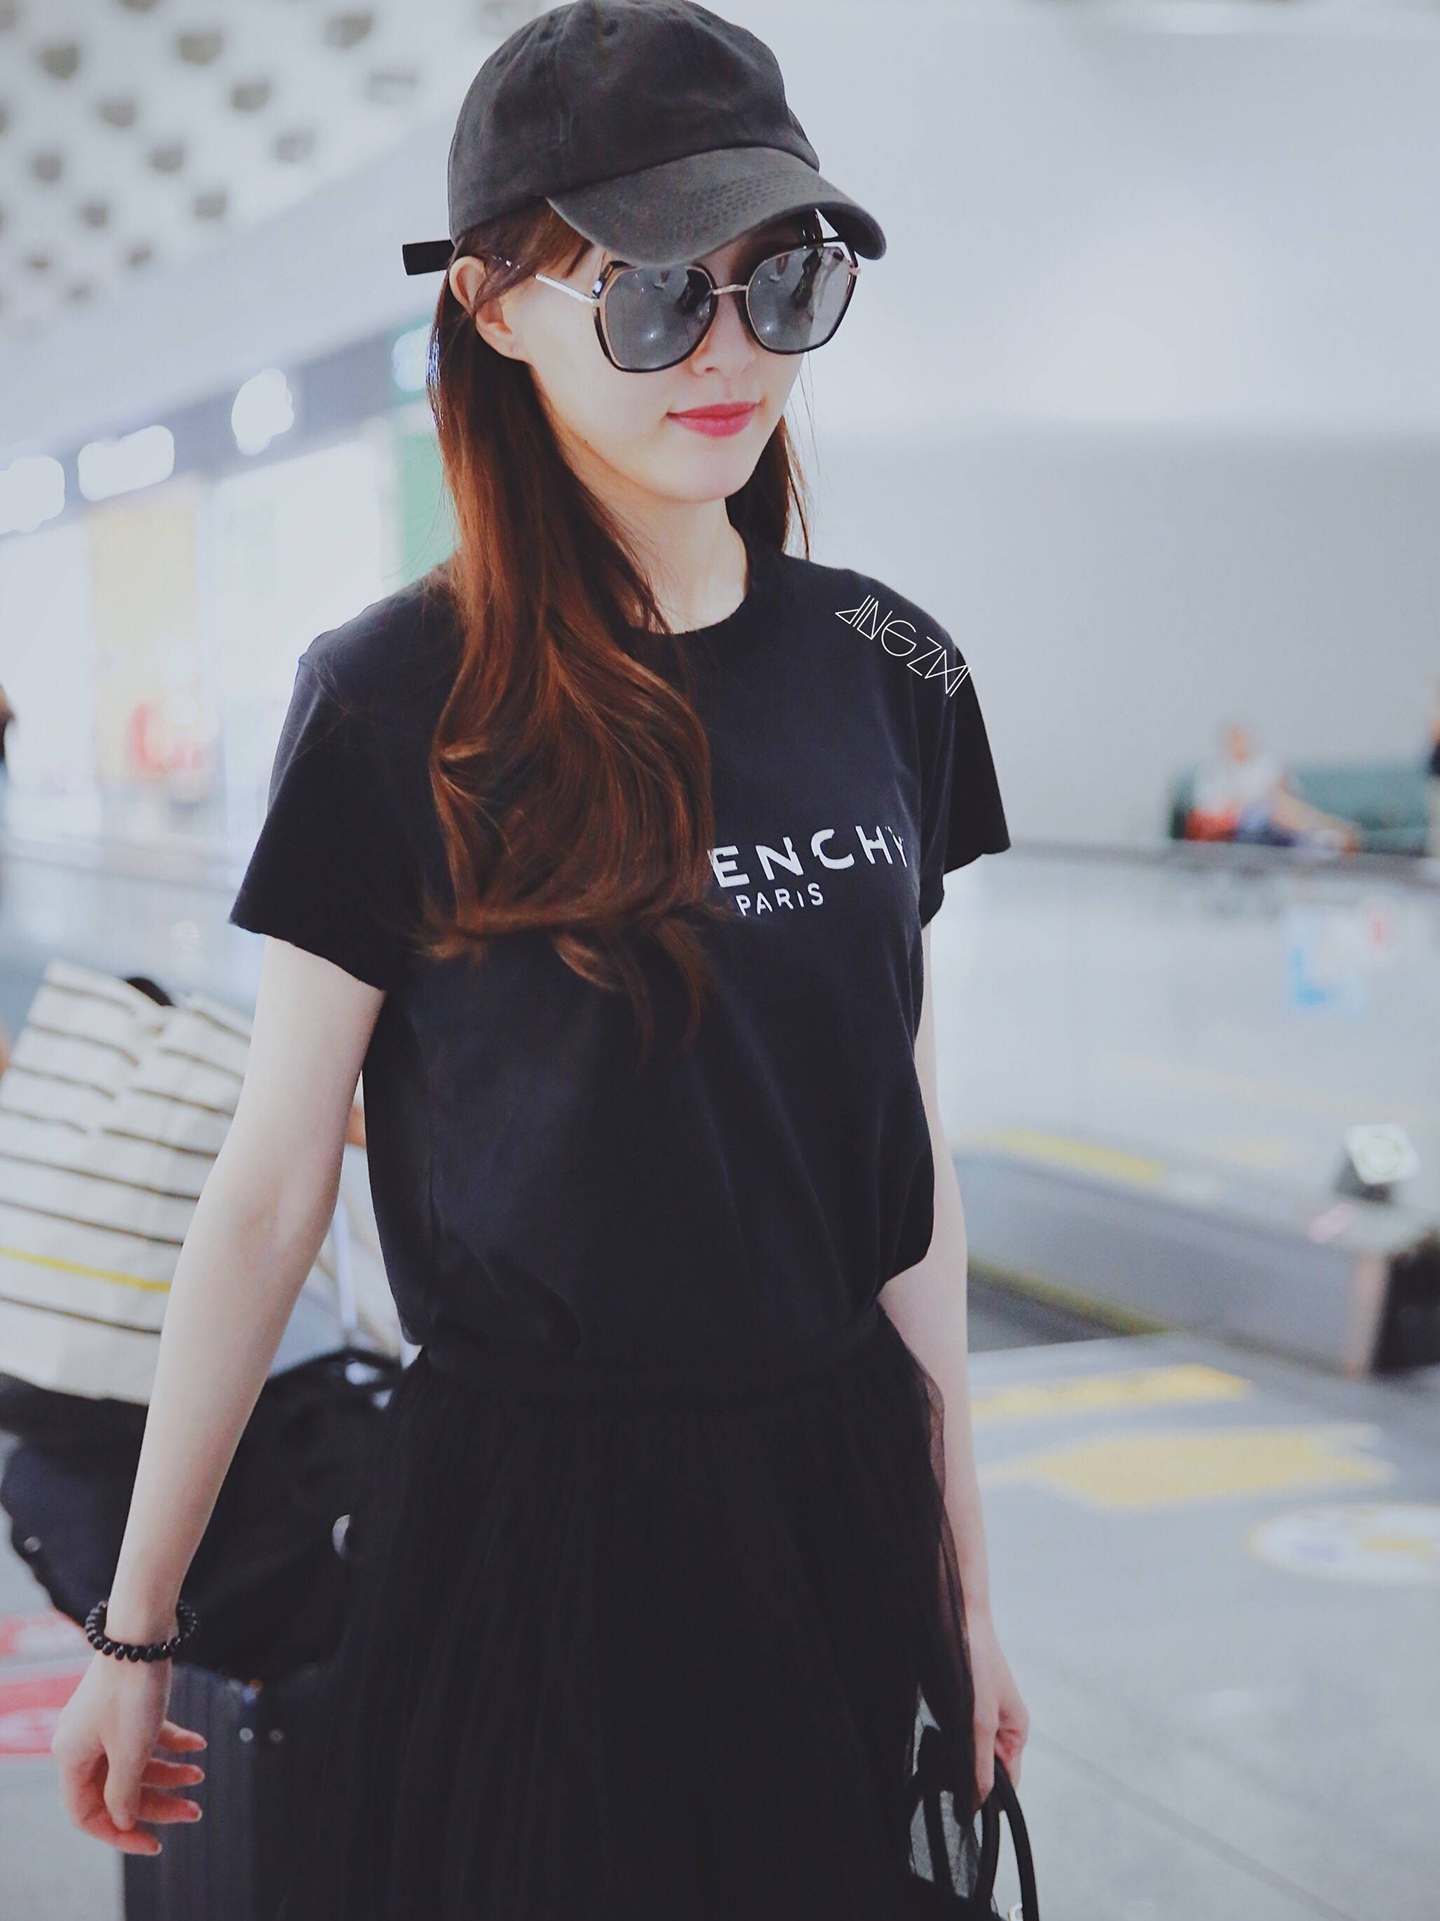 唐嫣最新机场照,黑上衣搭配黑纱裙化身黑天鹅优雅高贵,格外迷人